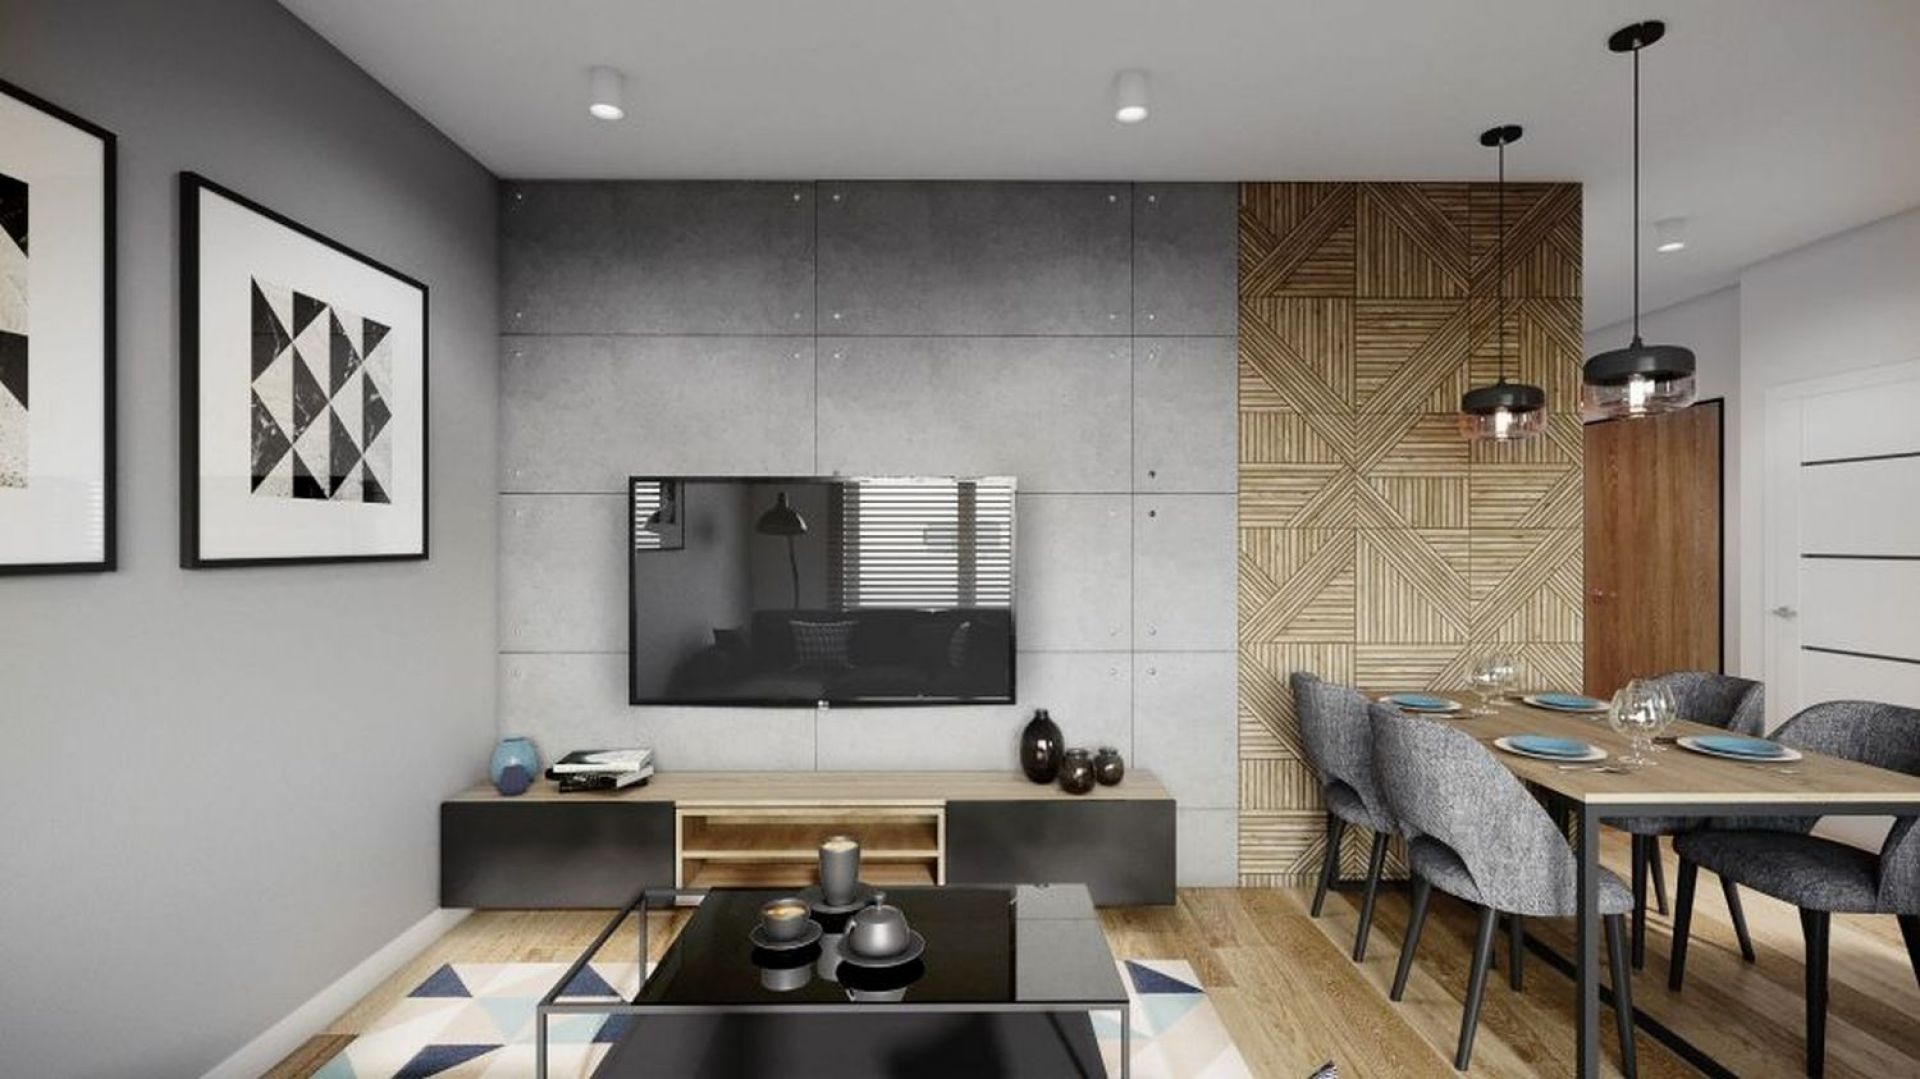 Betonowe płyty w salonie, fornir w kuchni. Projekt wnętrza i zdjęcie: Justyna Krupka, studio projektowe Przestrzenie